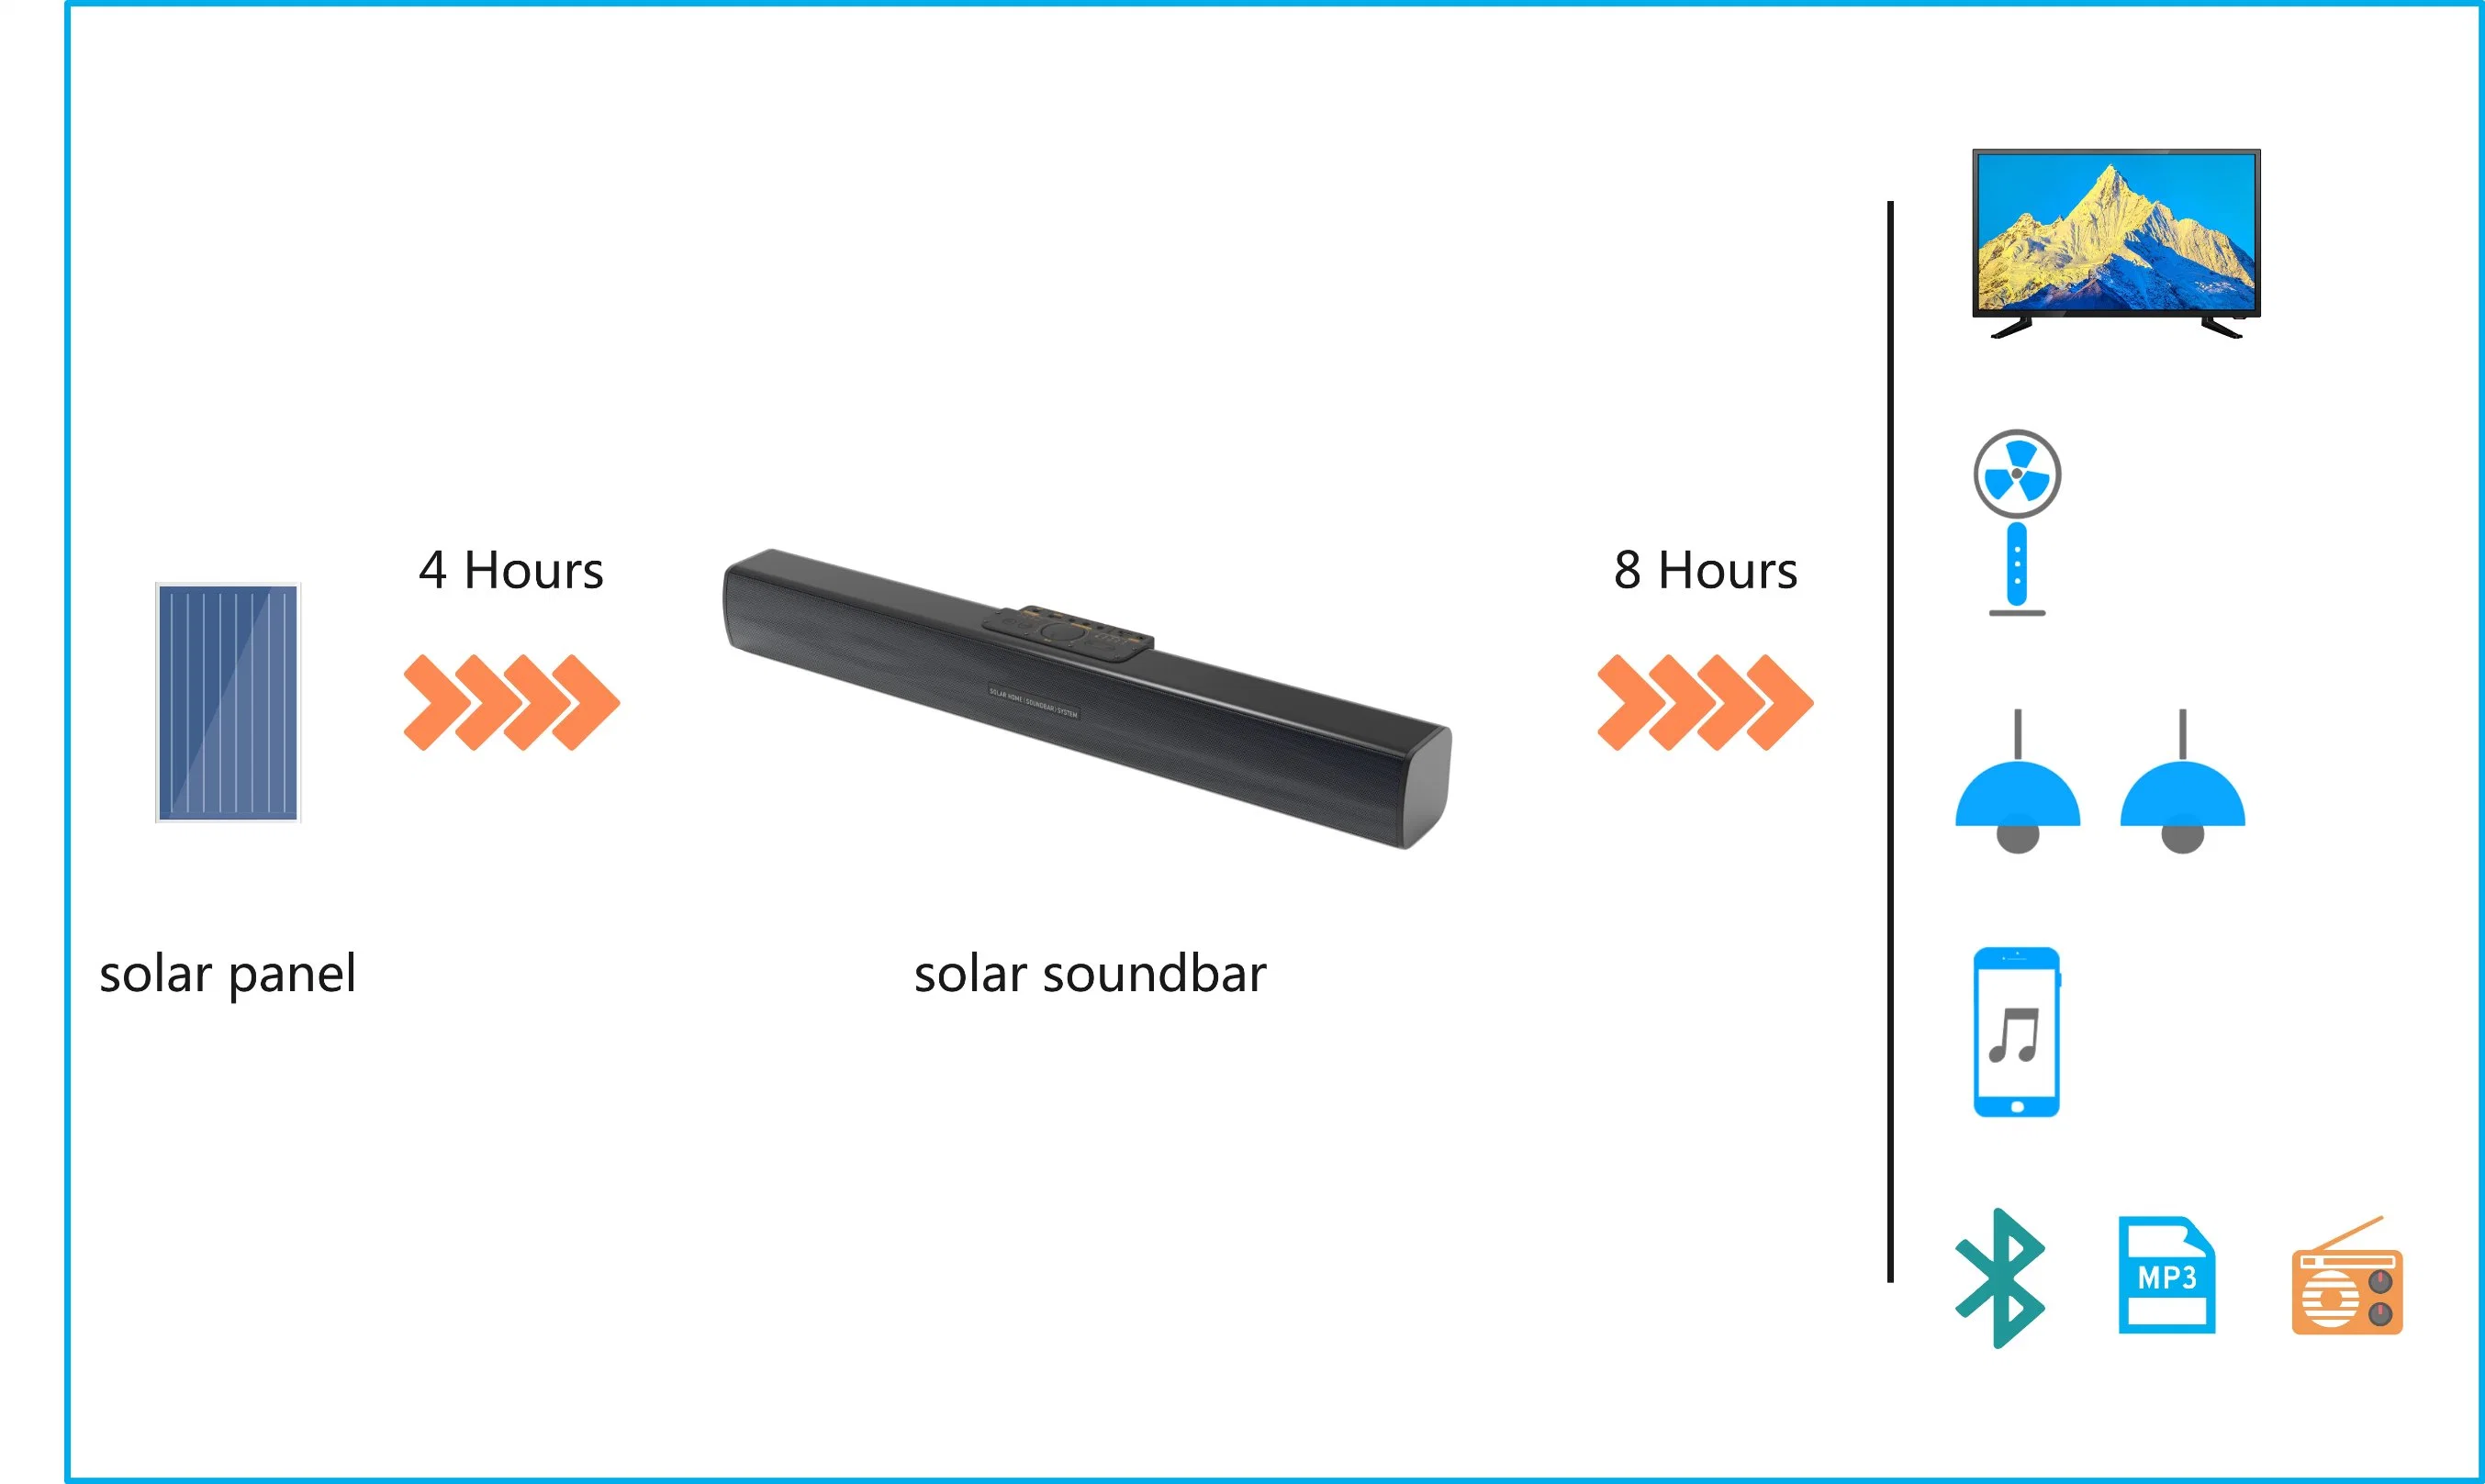 نظام إضاءة شمسية لصوت هاي فاي Super Bass Wireless IPX5 دراجة بخارية خارجية مقاومة للمياه، Power Bank، سماعة Bluetooth محمولة